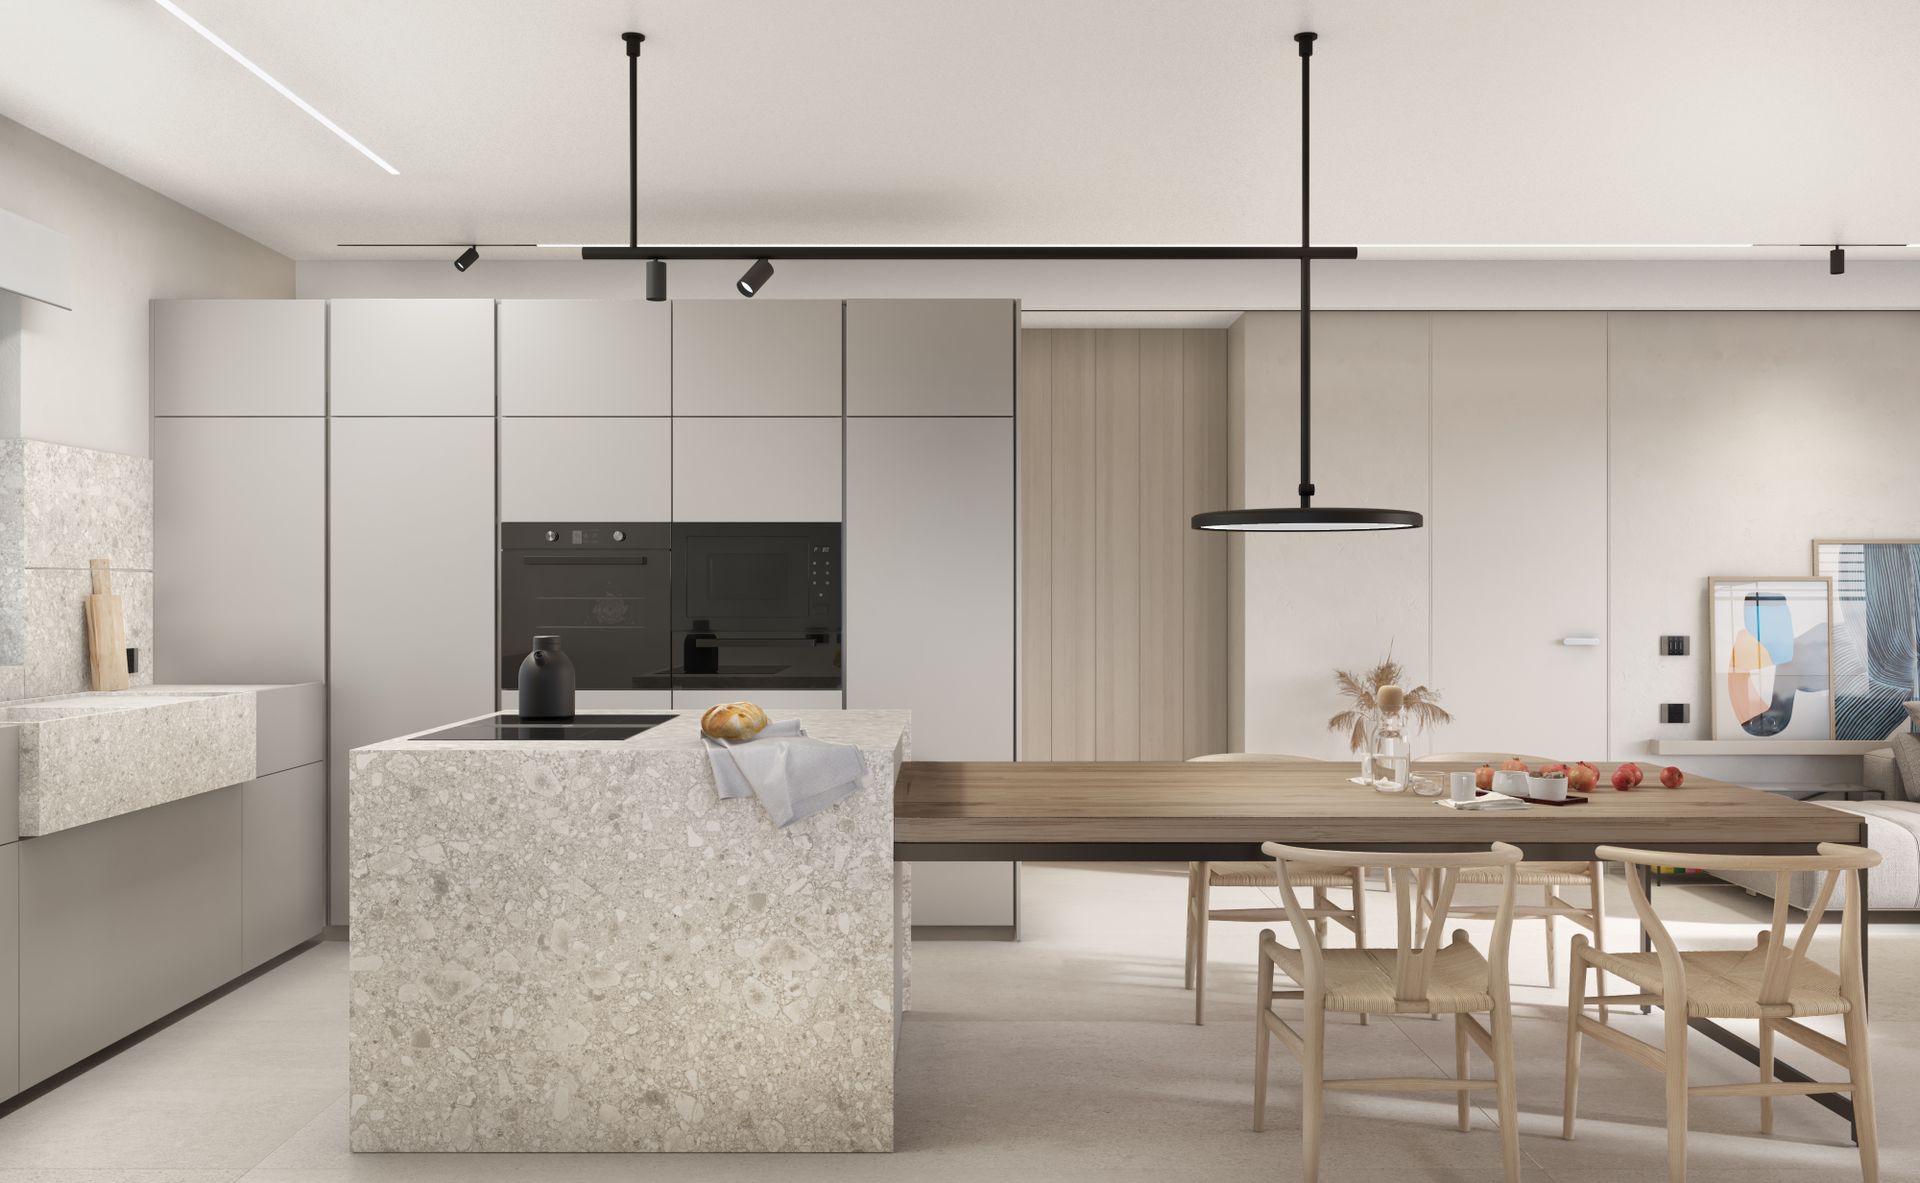 New apartment project, single-family house, convivium kitchen block, Ceppo di Grè. Officina Magisafi architecture design - convivium kitchen rendering